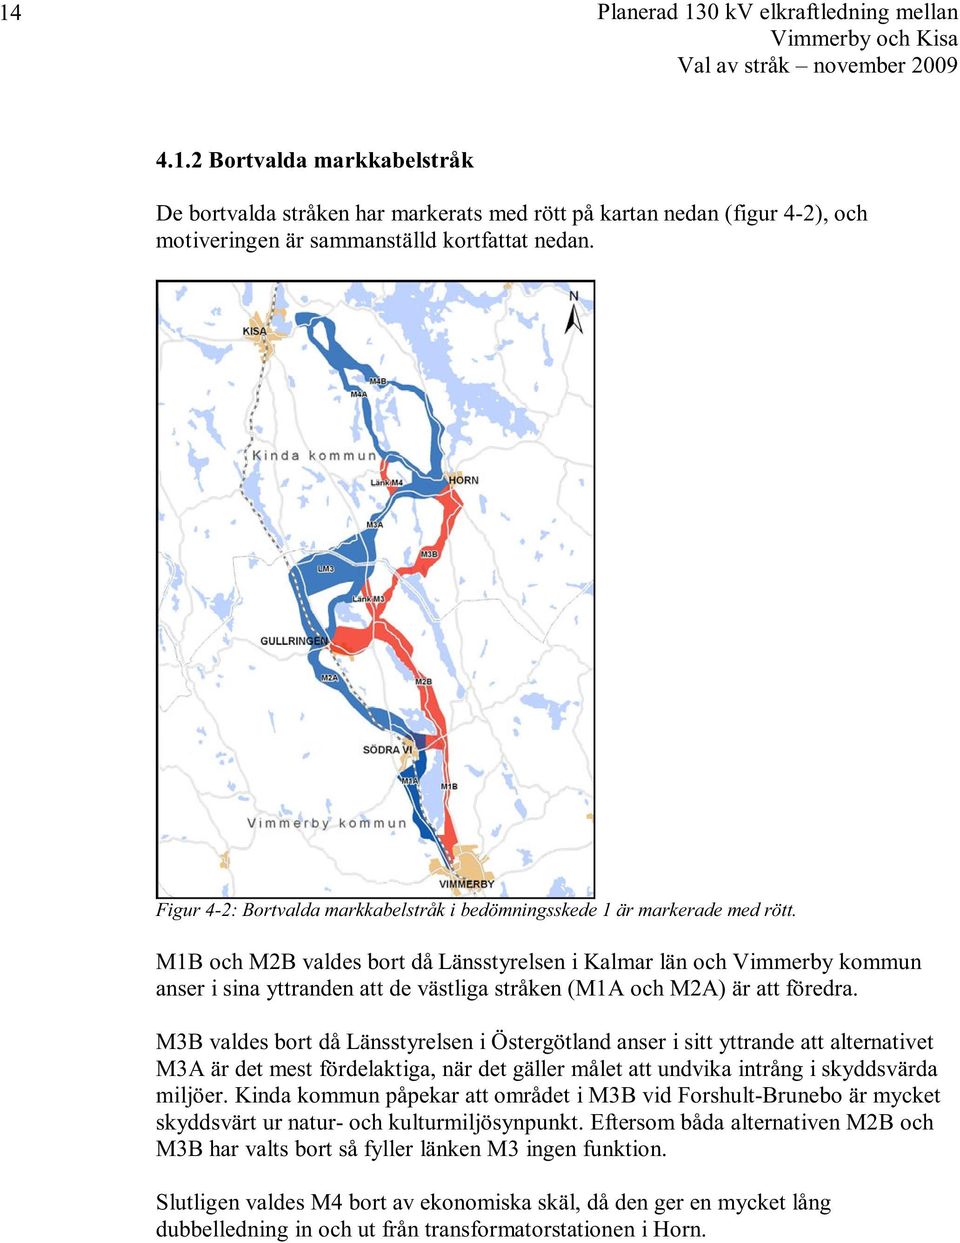 M1B och M2B valdes bort då Länsstyrelsen i Kalmar län och Vimmerby kommun anser i sina yttranden att de västliga stråken (M1A och M2A) är att föredra.